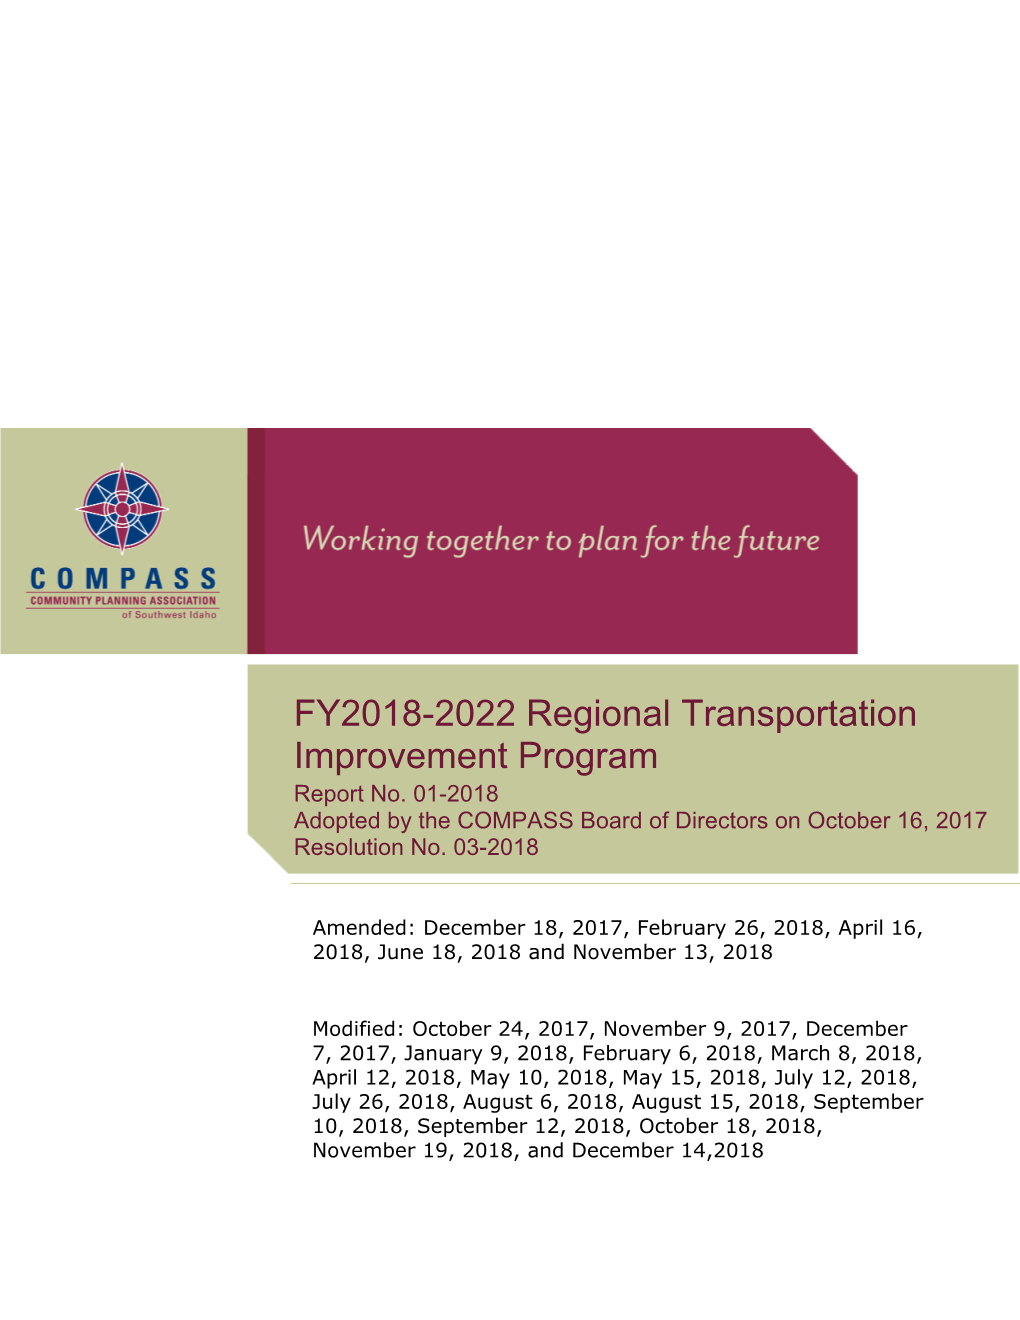 FY2018-2022 Regional Transportation Improvement Program